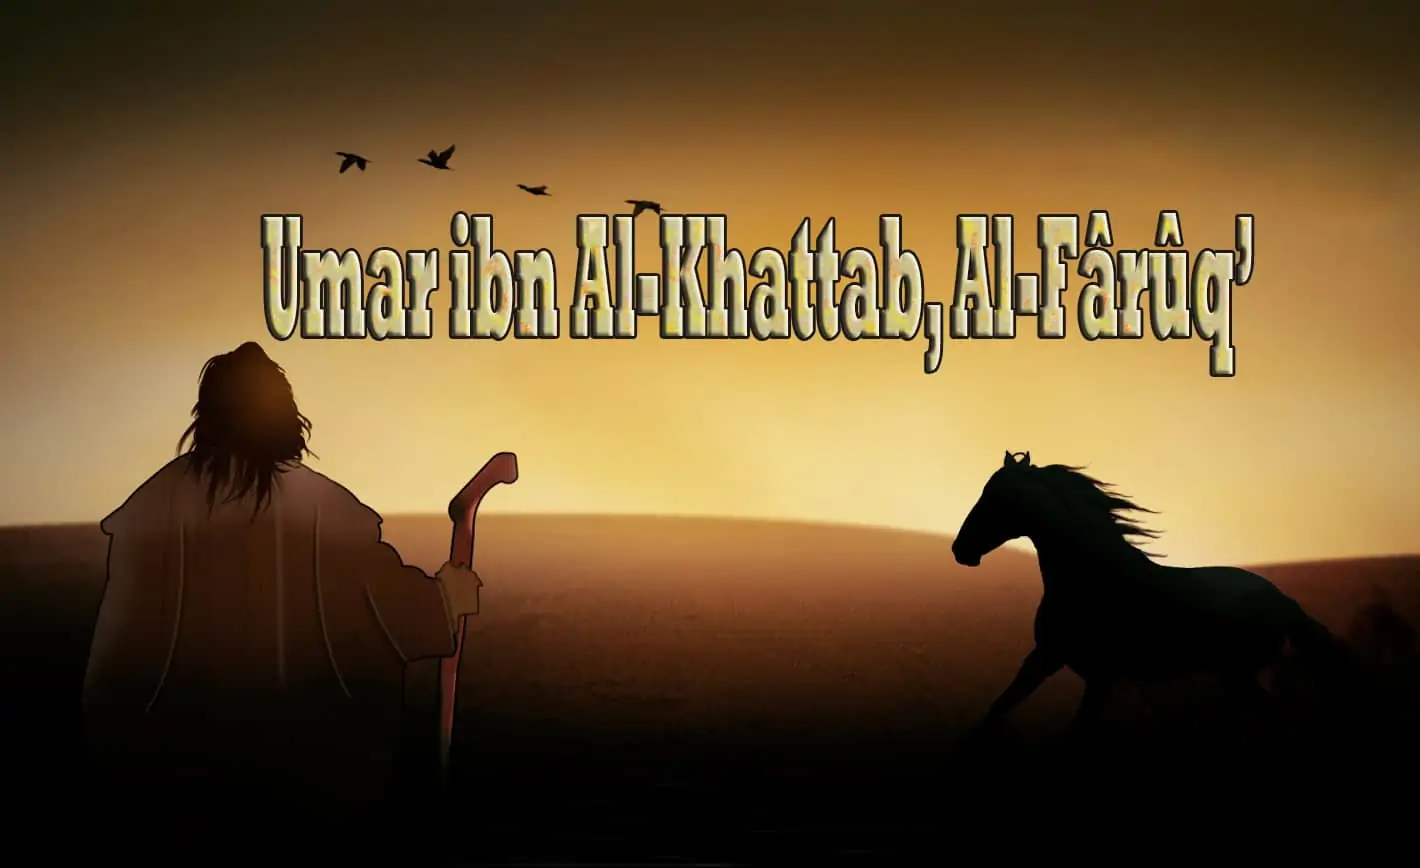 ‘Umar ibn Al-Khattab, Al-Fârûq 1